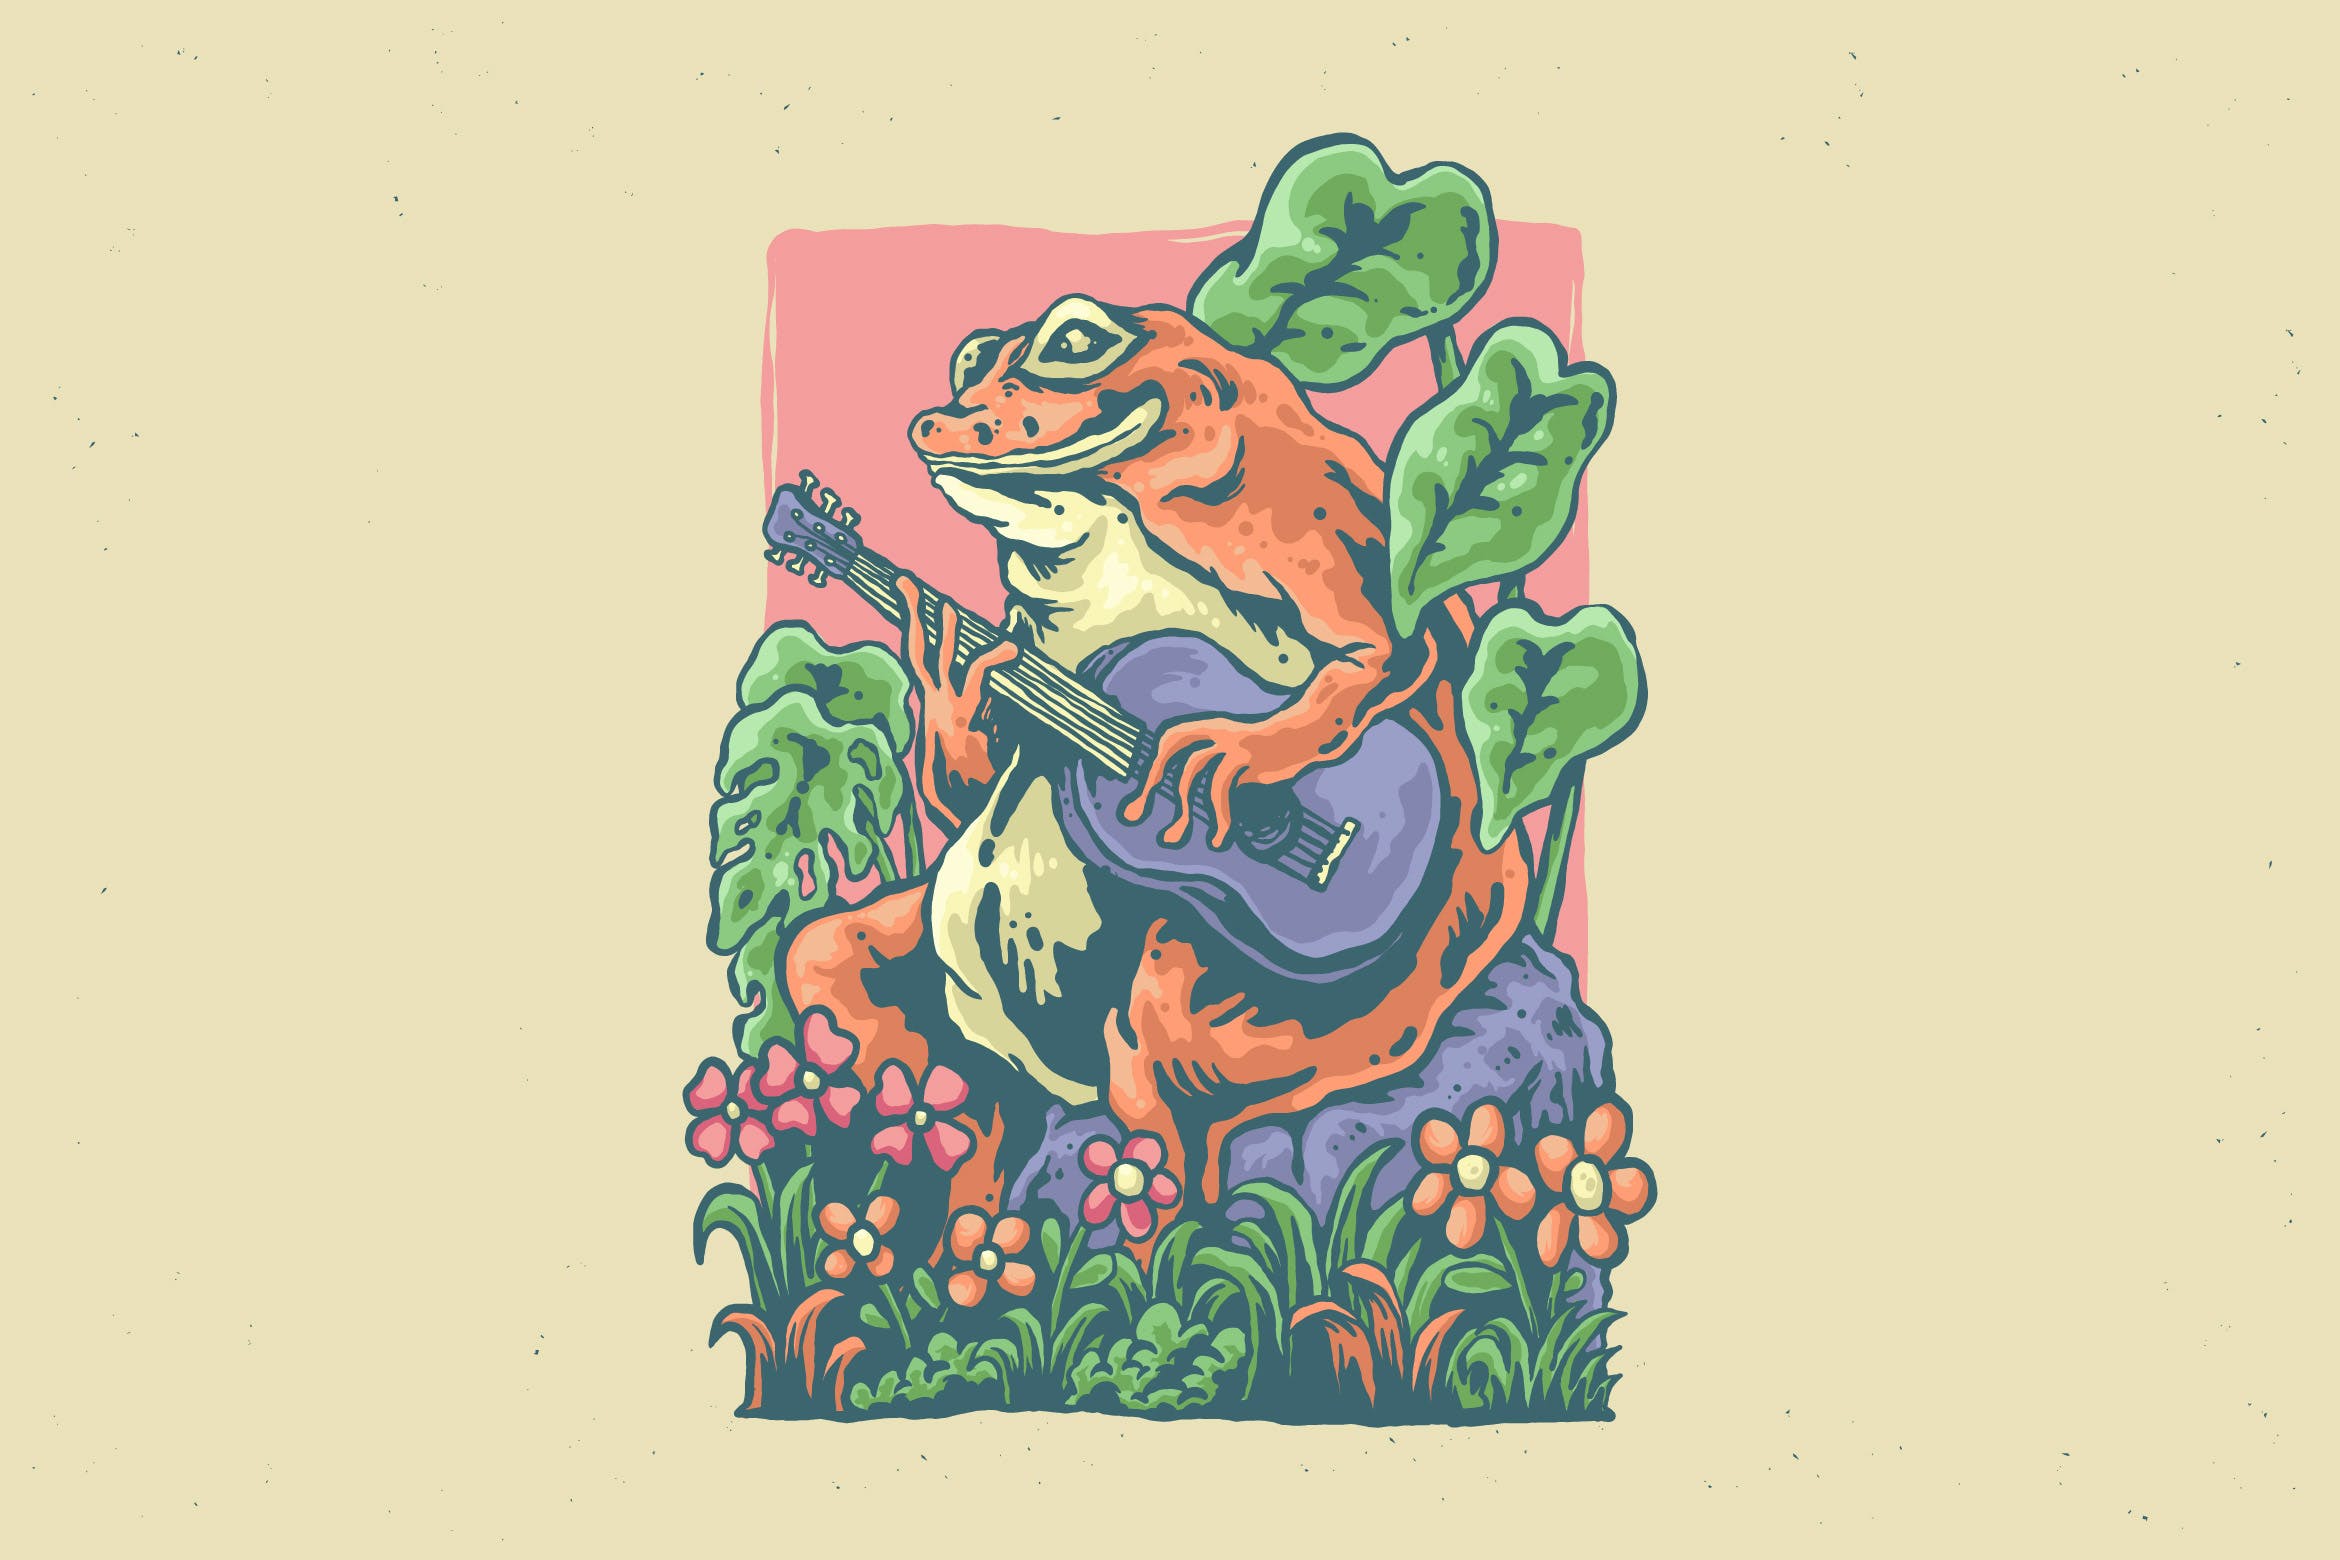 弹吉他青蛙设计插画 illustration of frog playing guitar design-1